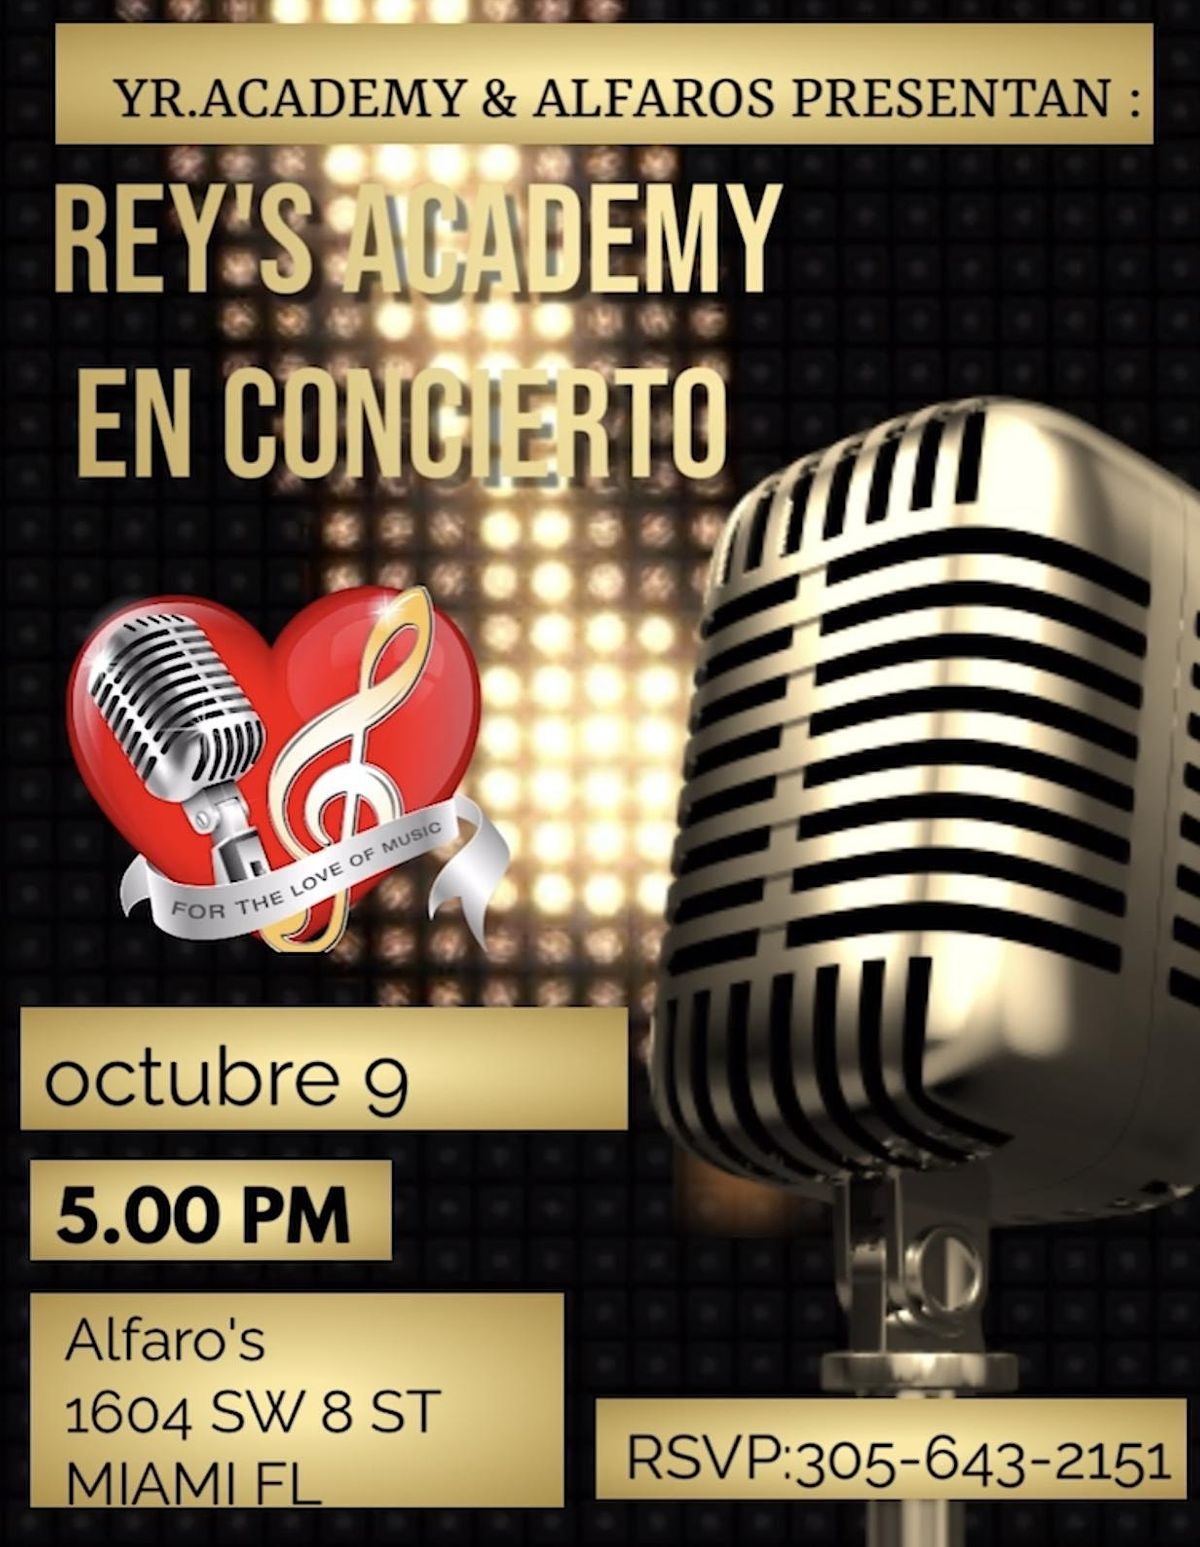 Rey's academy en concierto